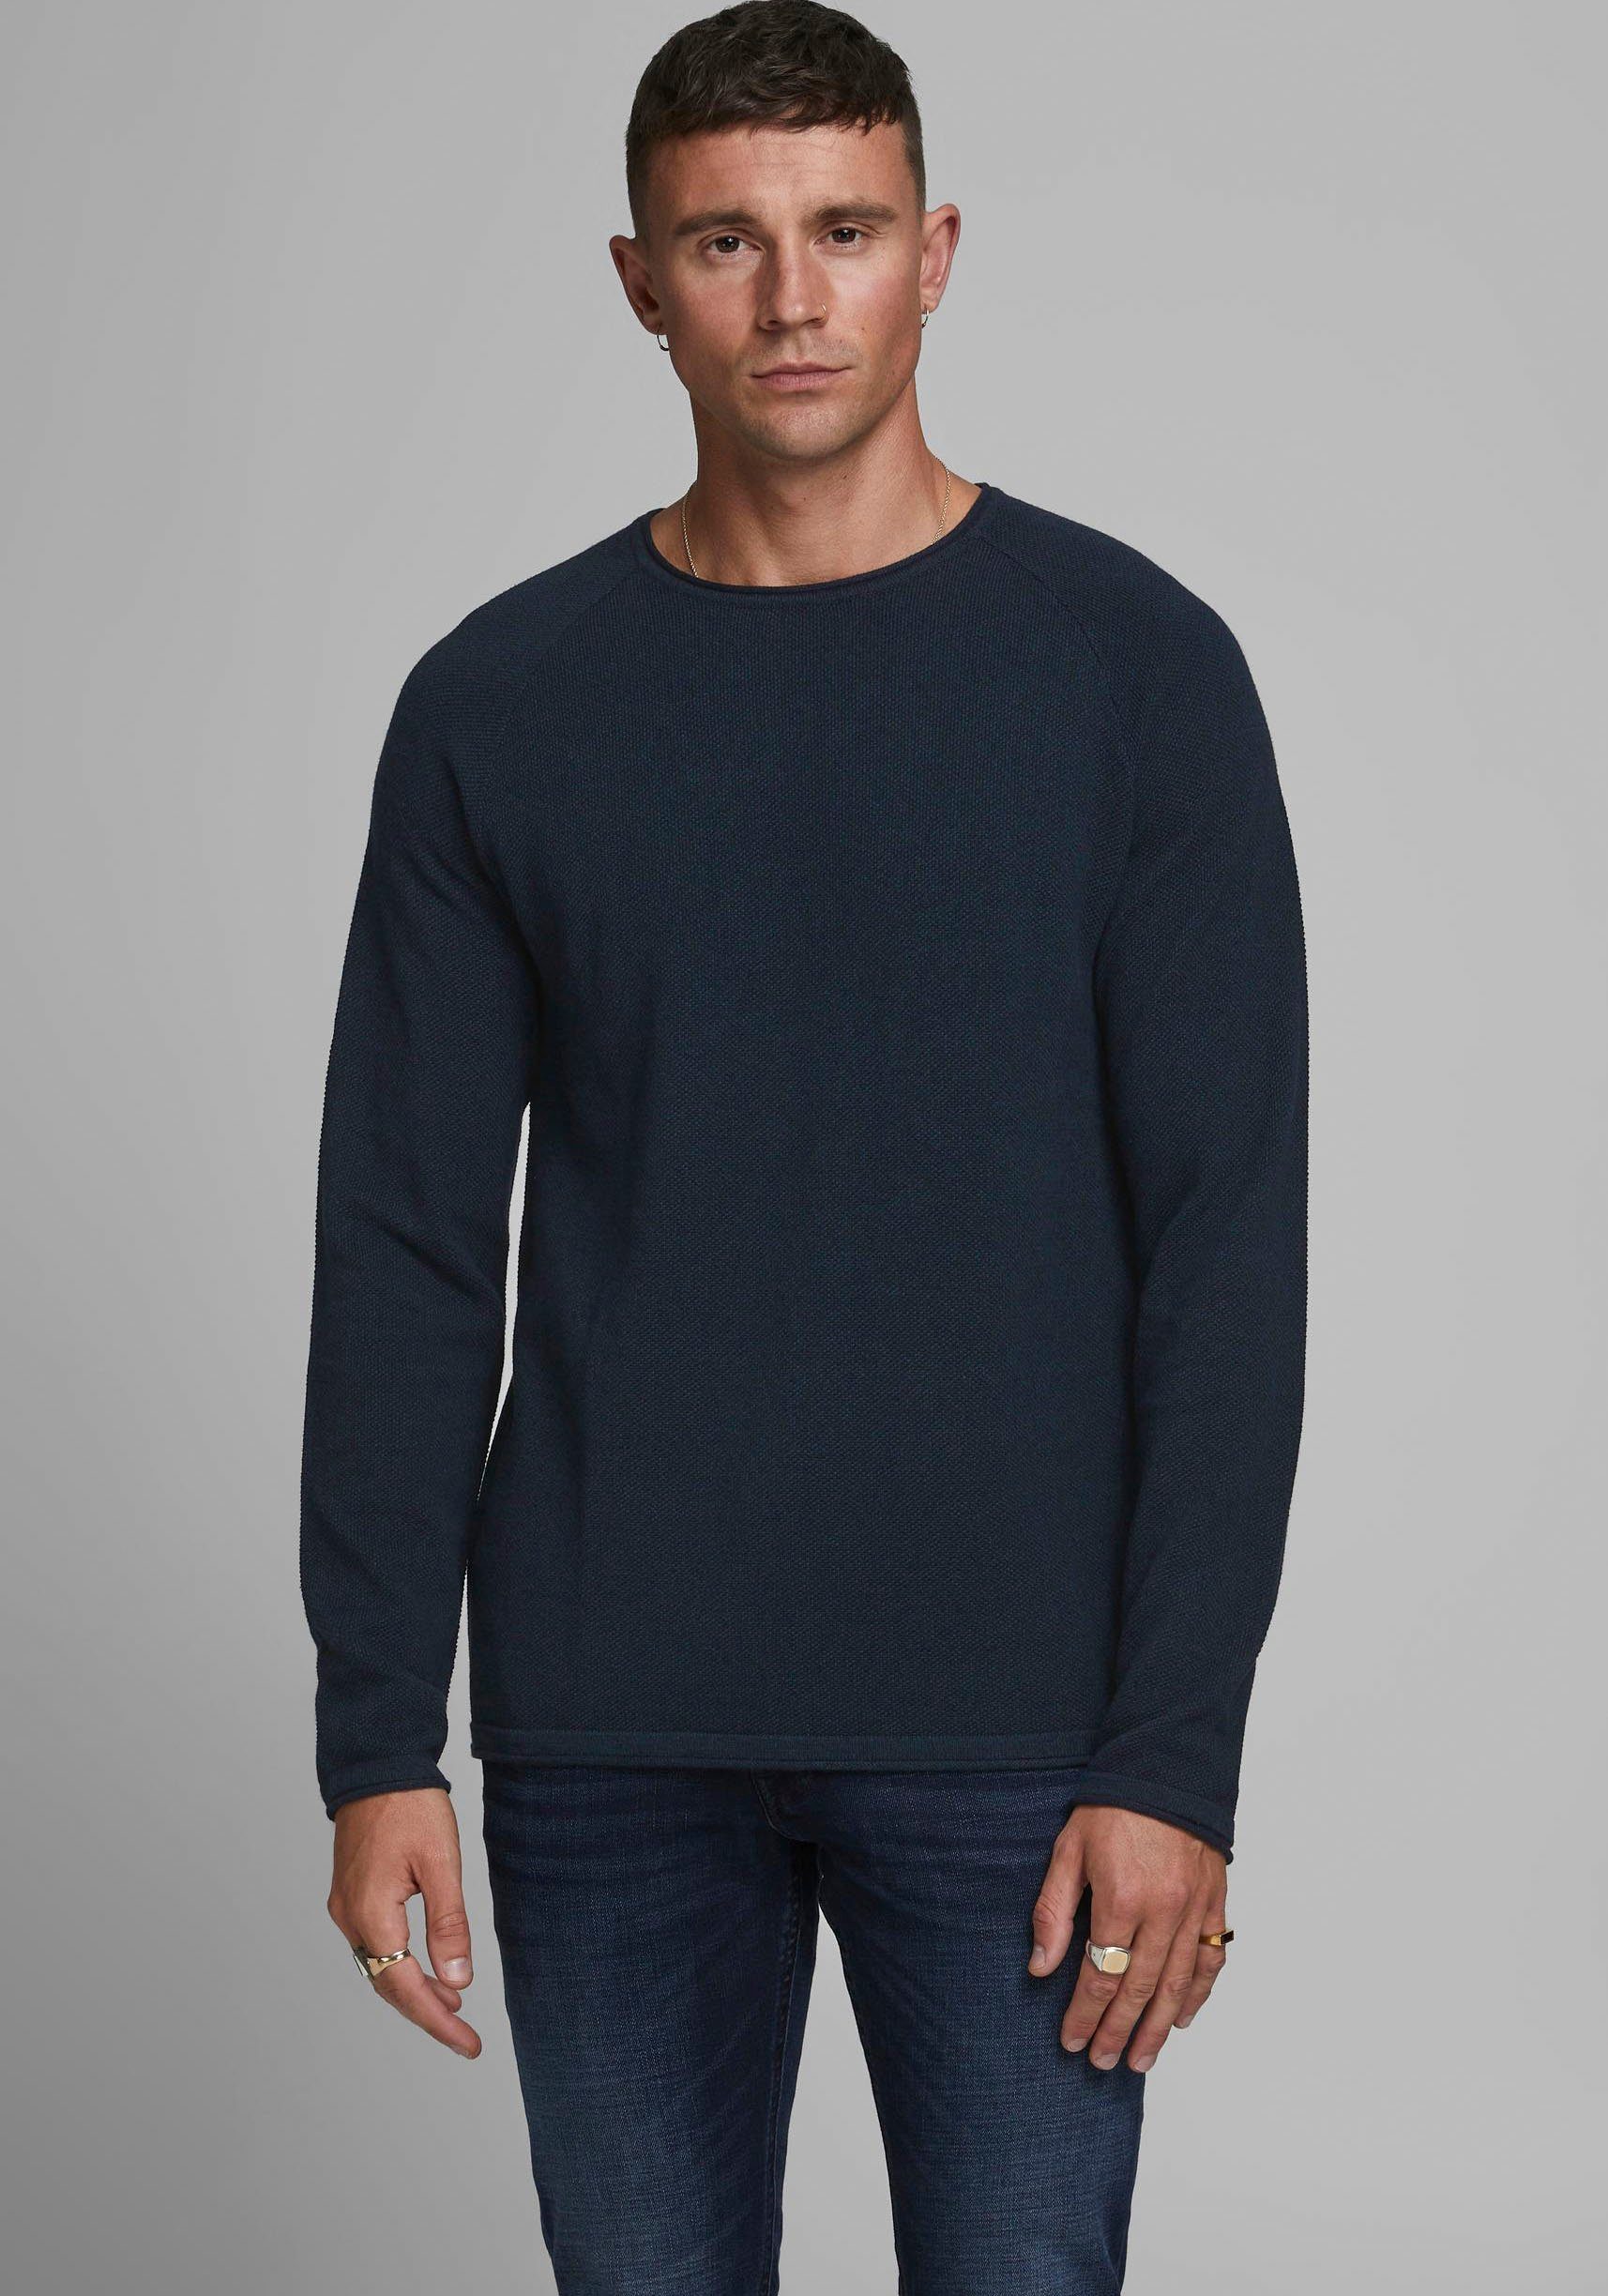 Moderner Herren Pullover online kaufen | OTTO